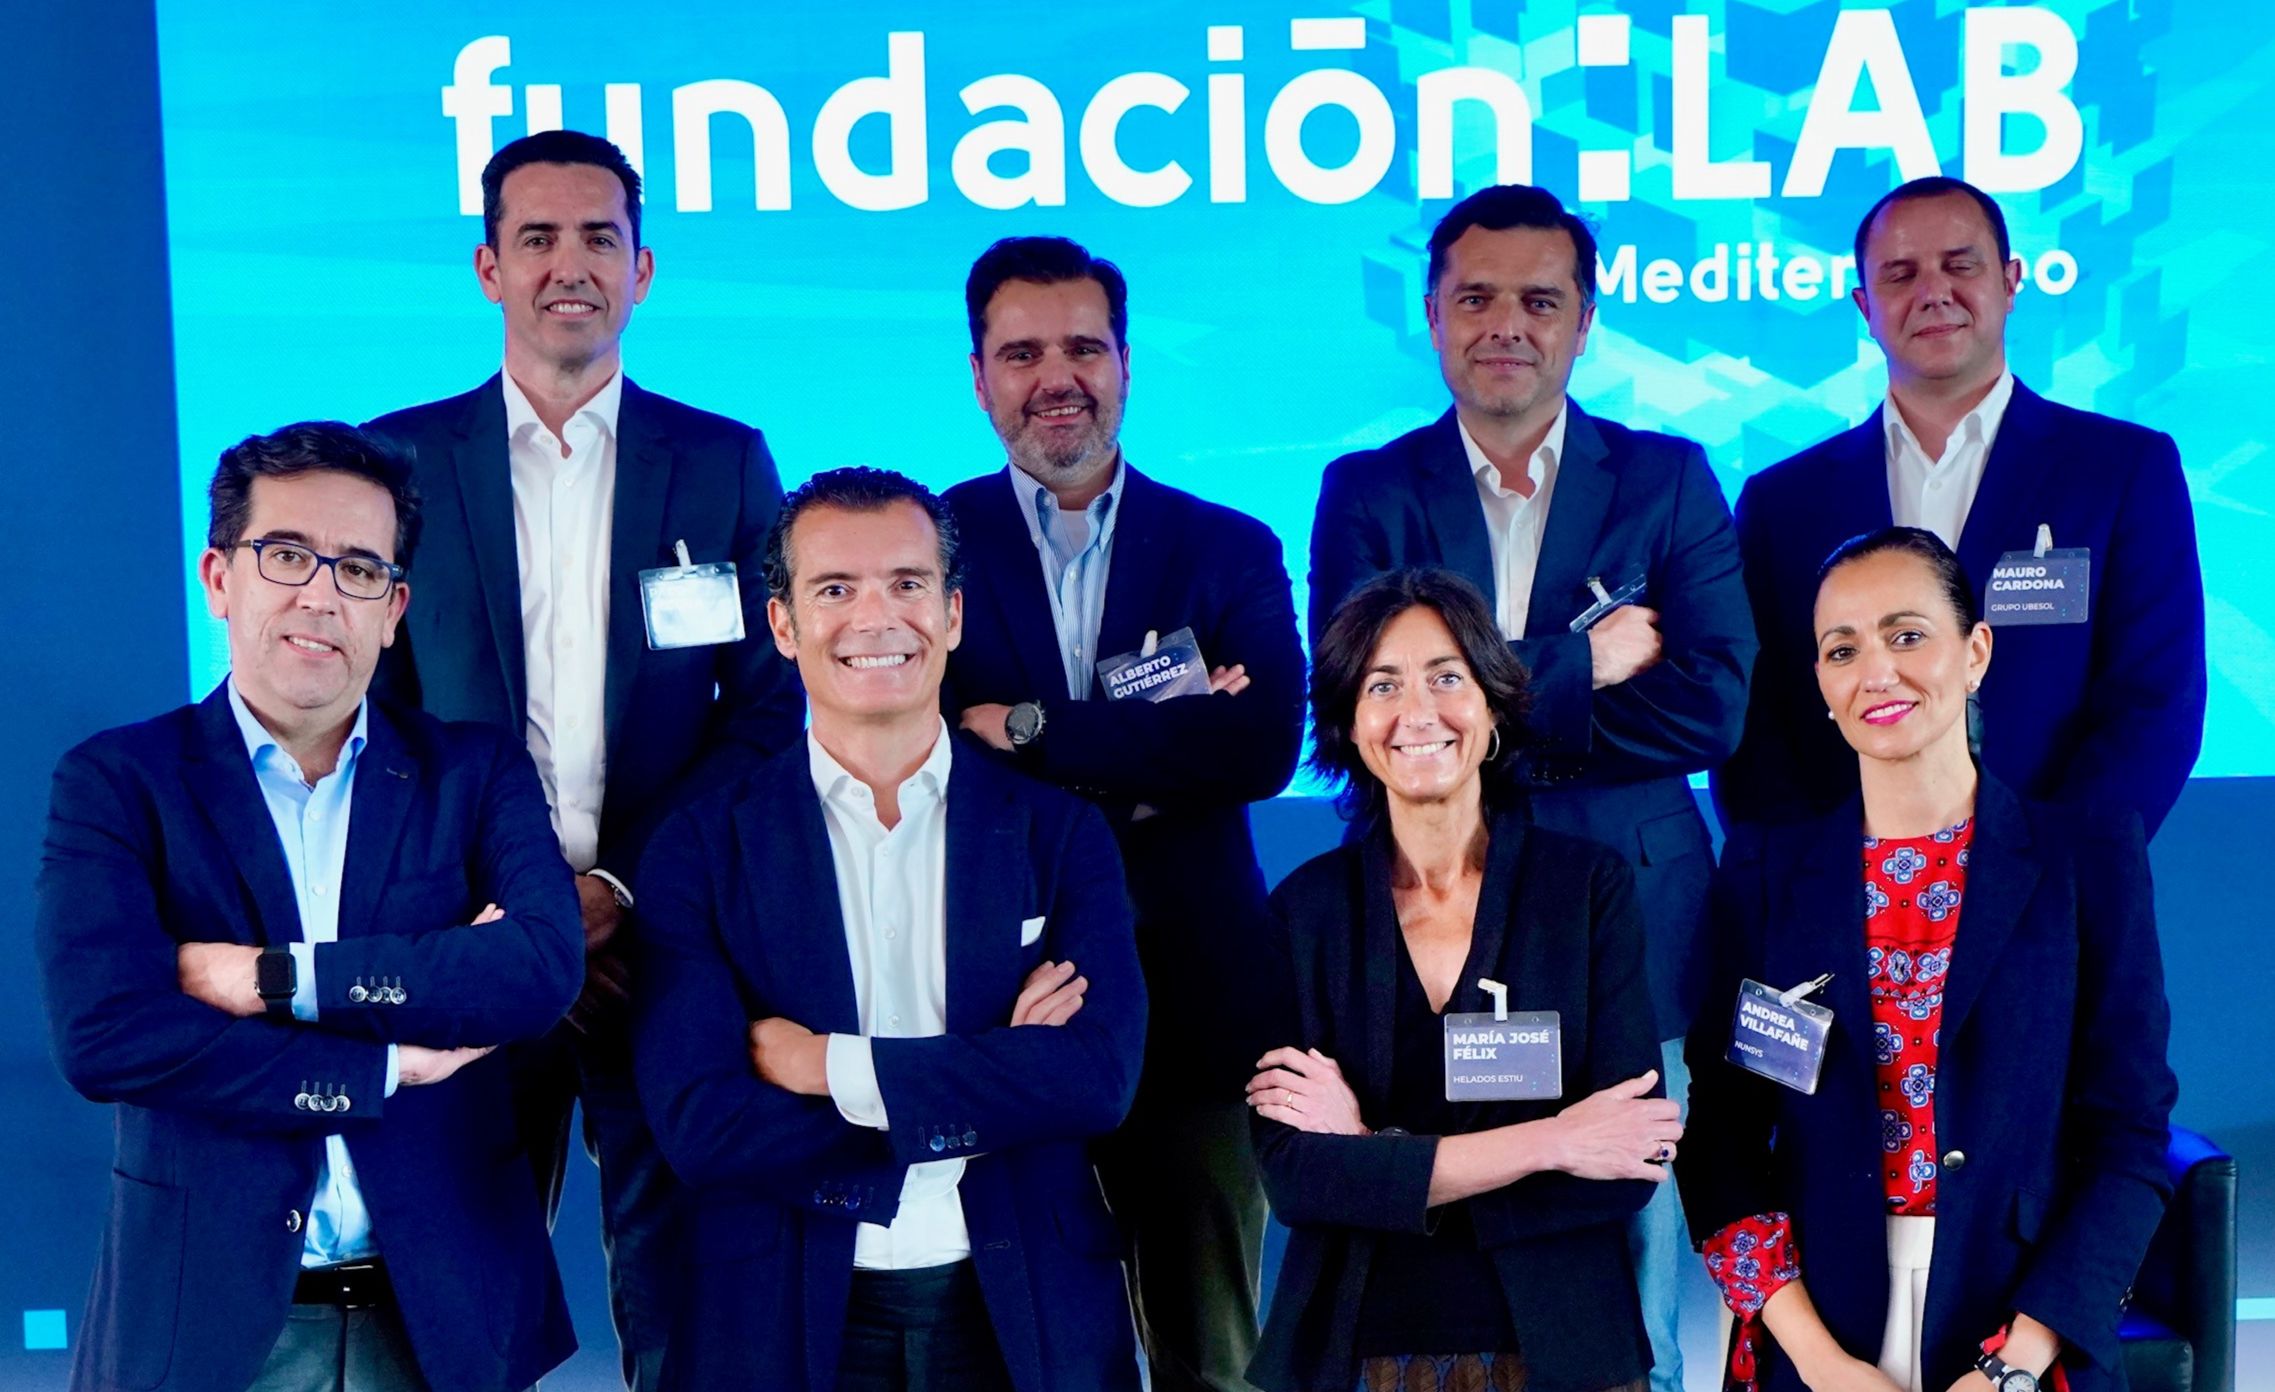 Fundación LAB Mediterráneo examina la digitalización industrial con la visión de grandes empresas